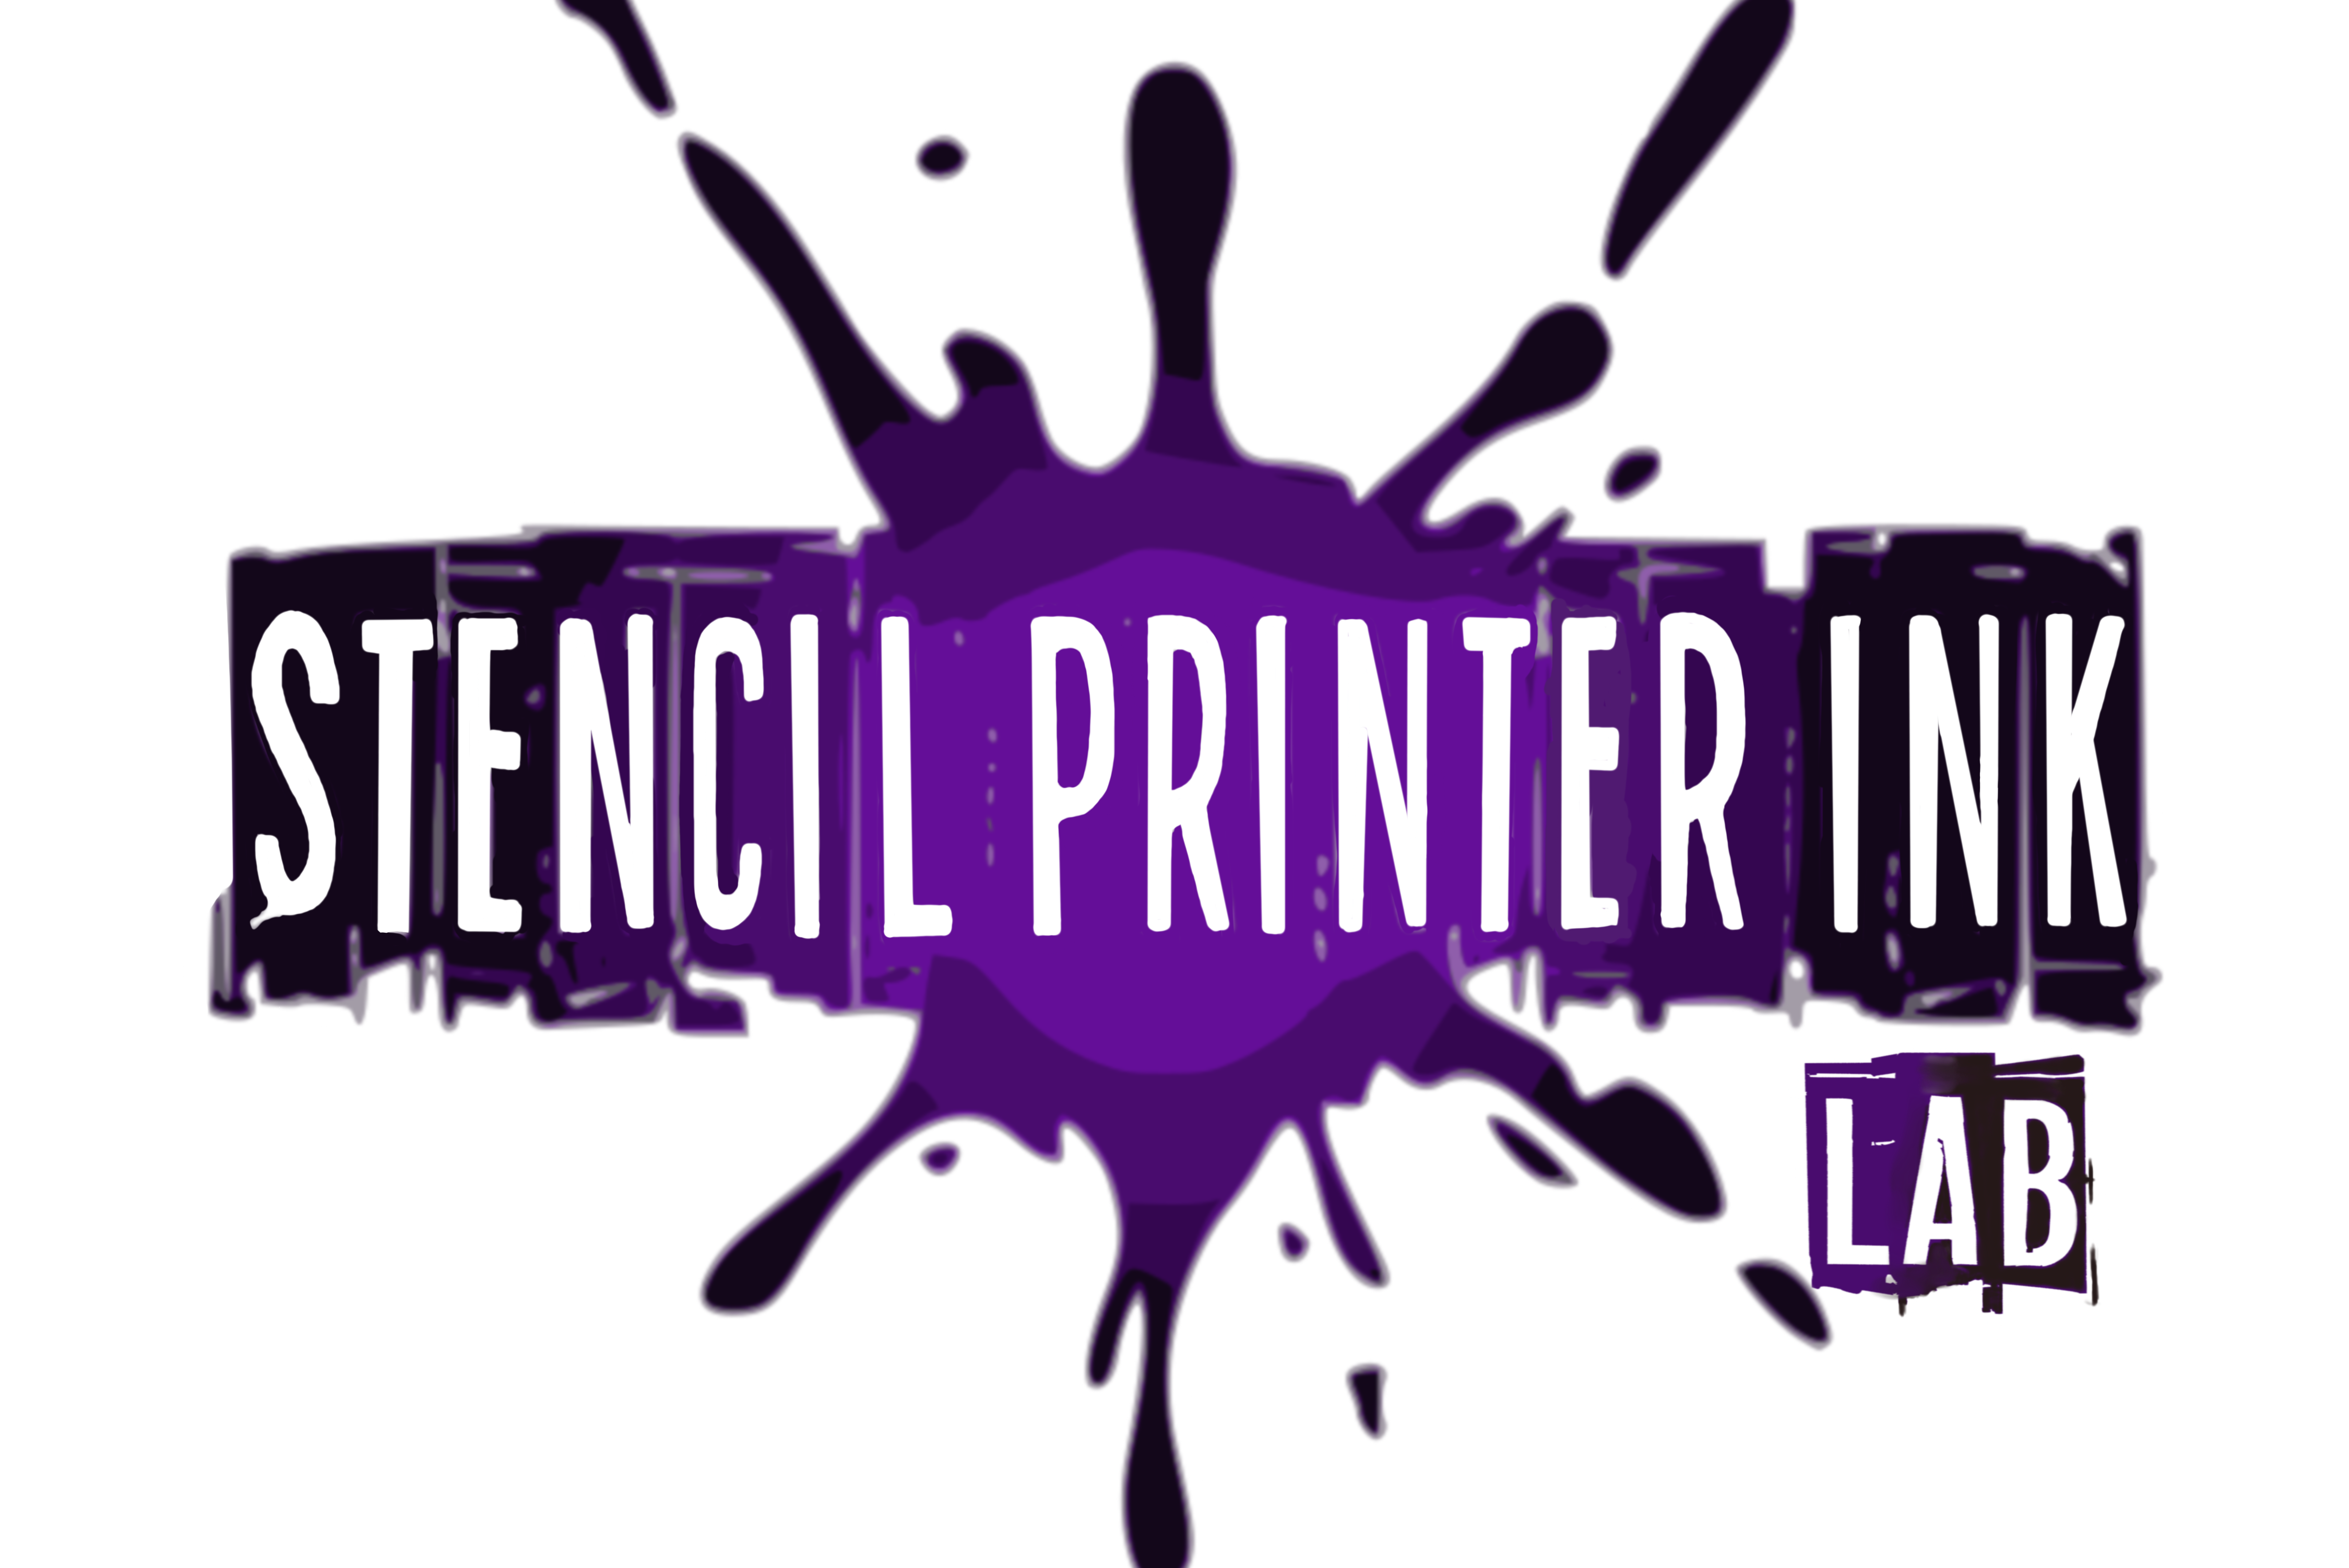 Stencil printer ink